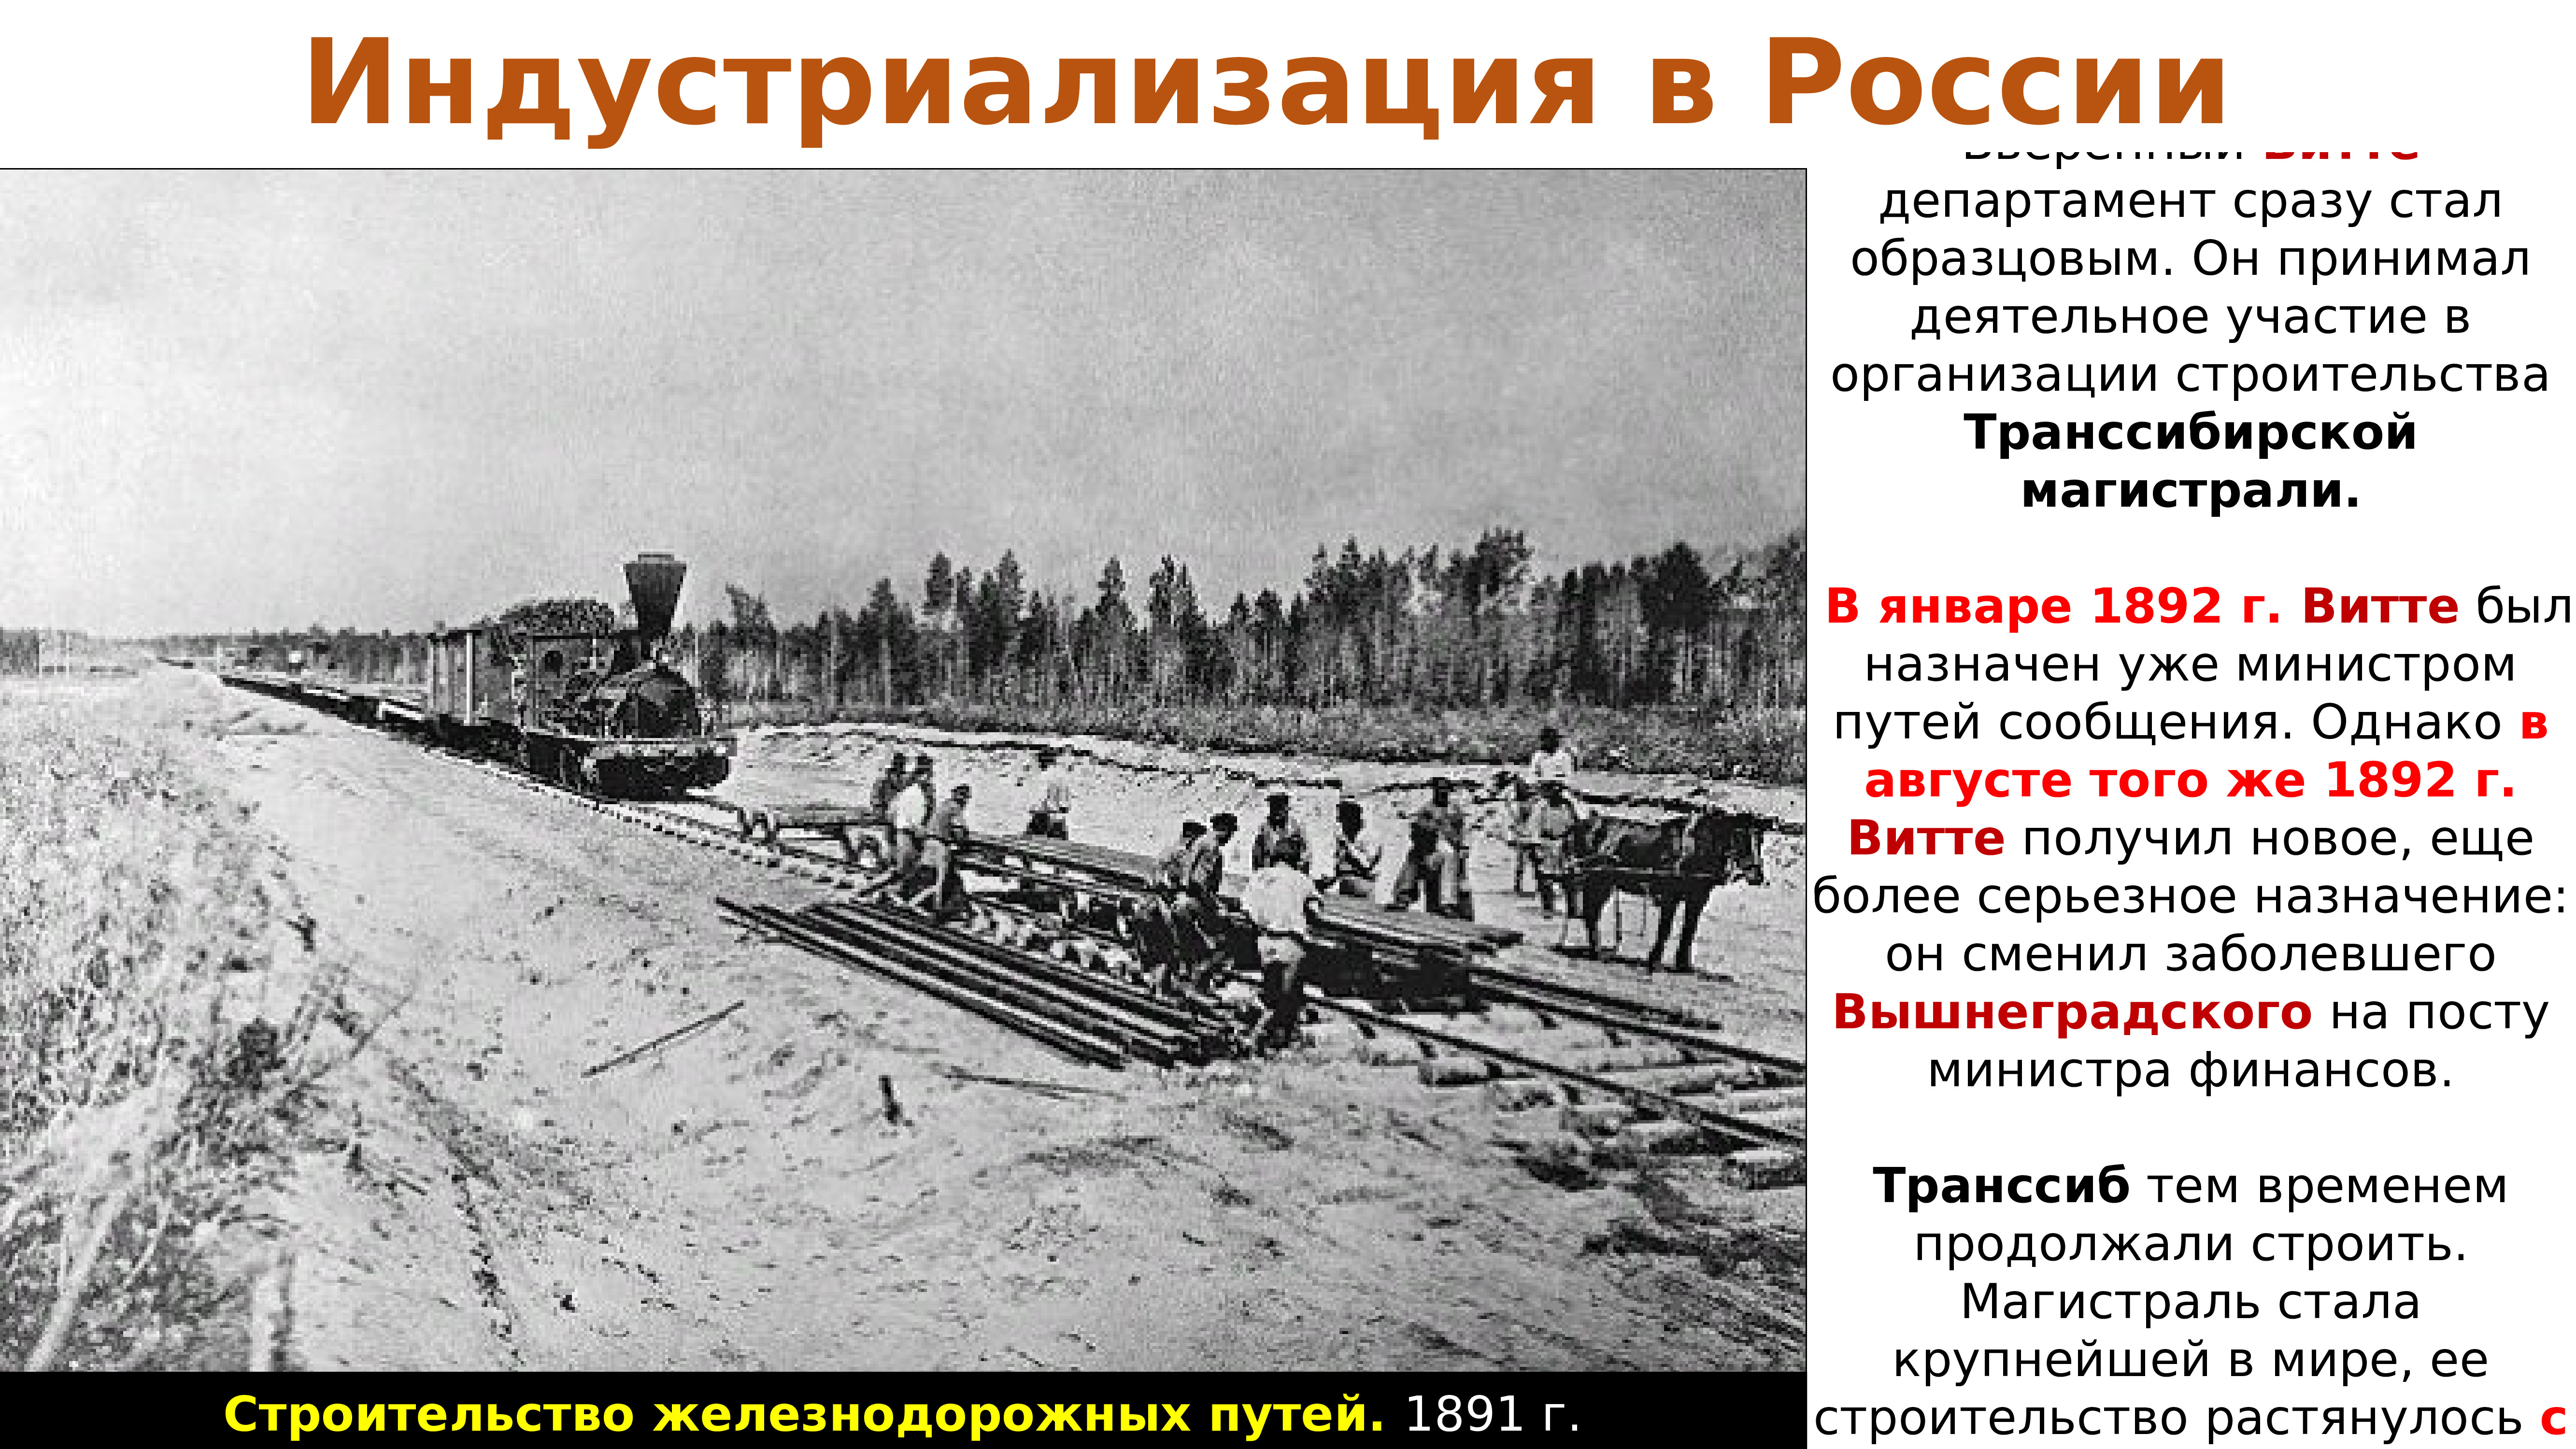 Развитие российской железной дороги